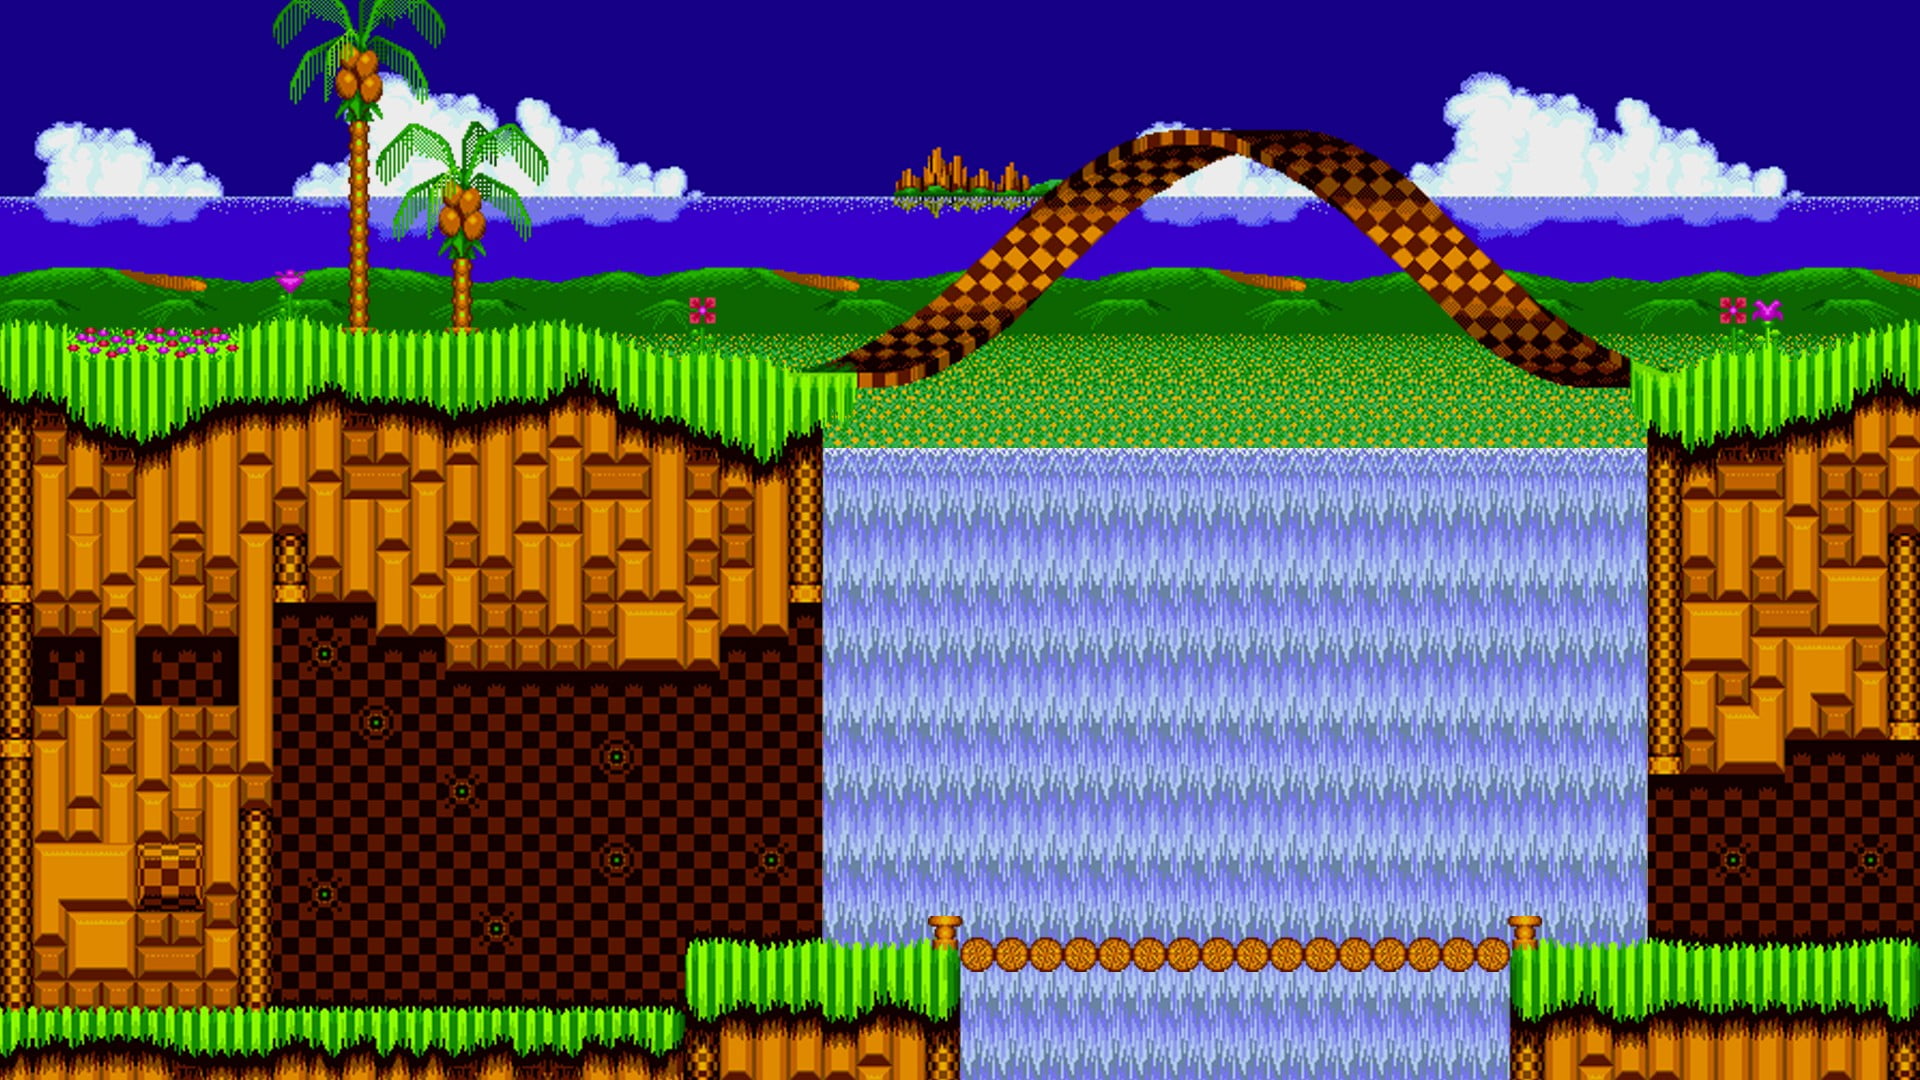 Sonic the Hedgehog HD wallpaper. Trang trí cho điện thoại hoặc máy tính của bạn với những hình nền đẹp lung linh của Sonic. Chiêm ngưỡng các bản vẽ kỹ thuật số hoàn toàn mới, mang đến cho bạn một cái nhìn đầy sáng tạo về nhân vật huyền thoại này.